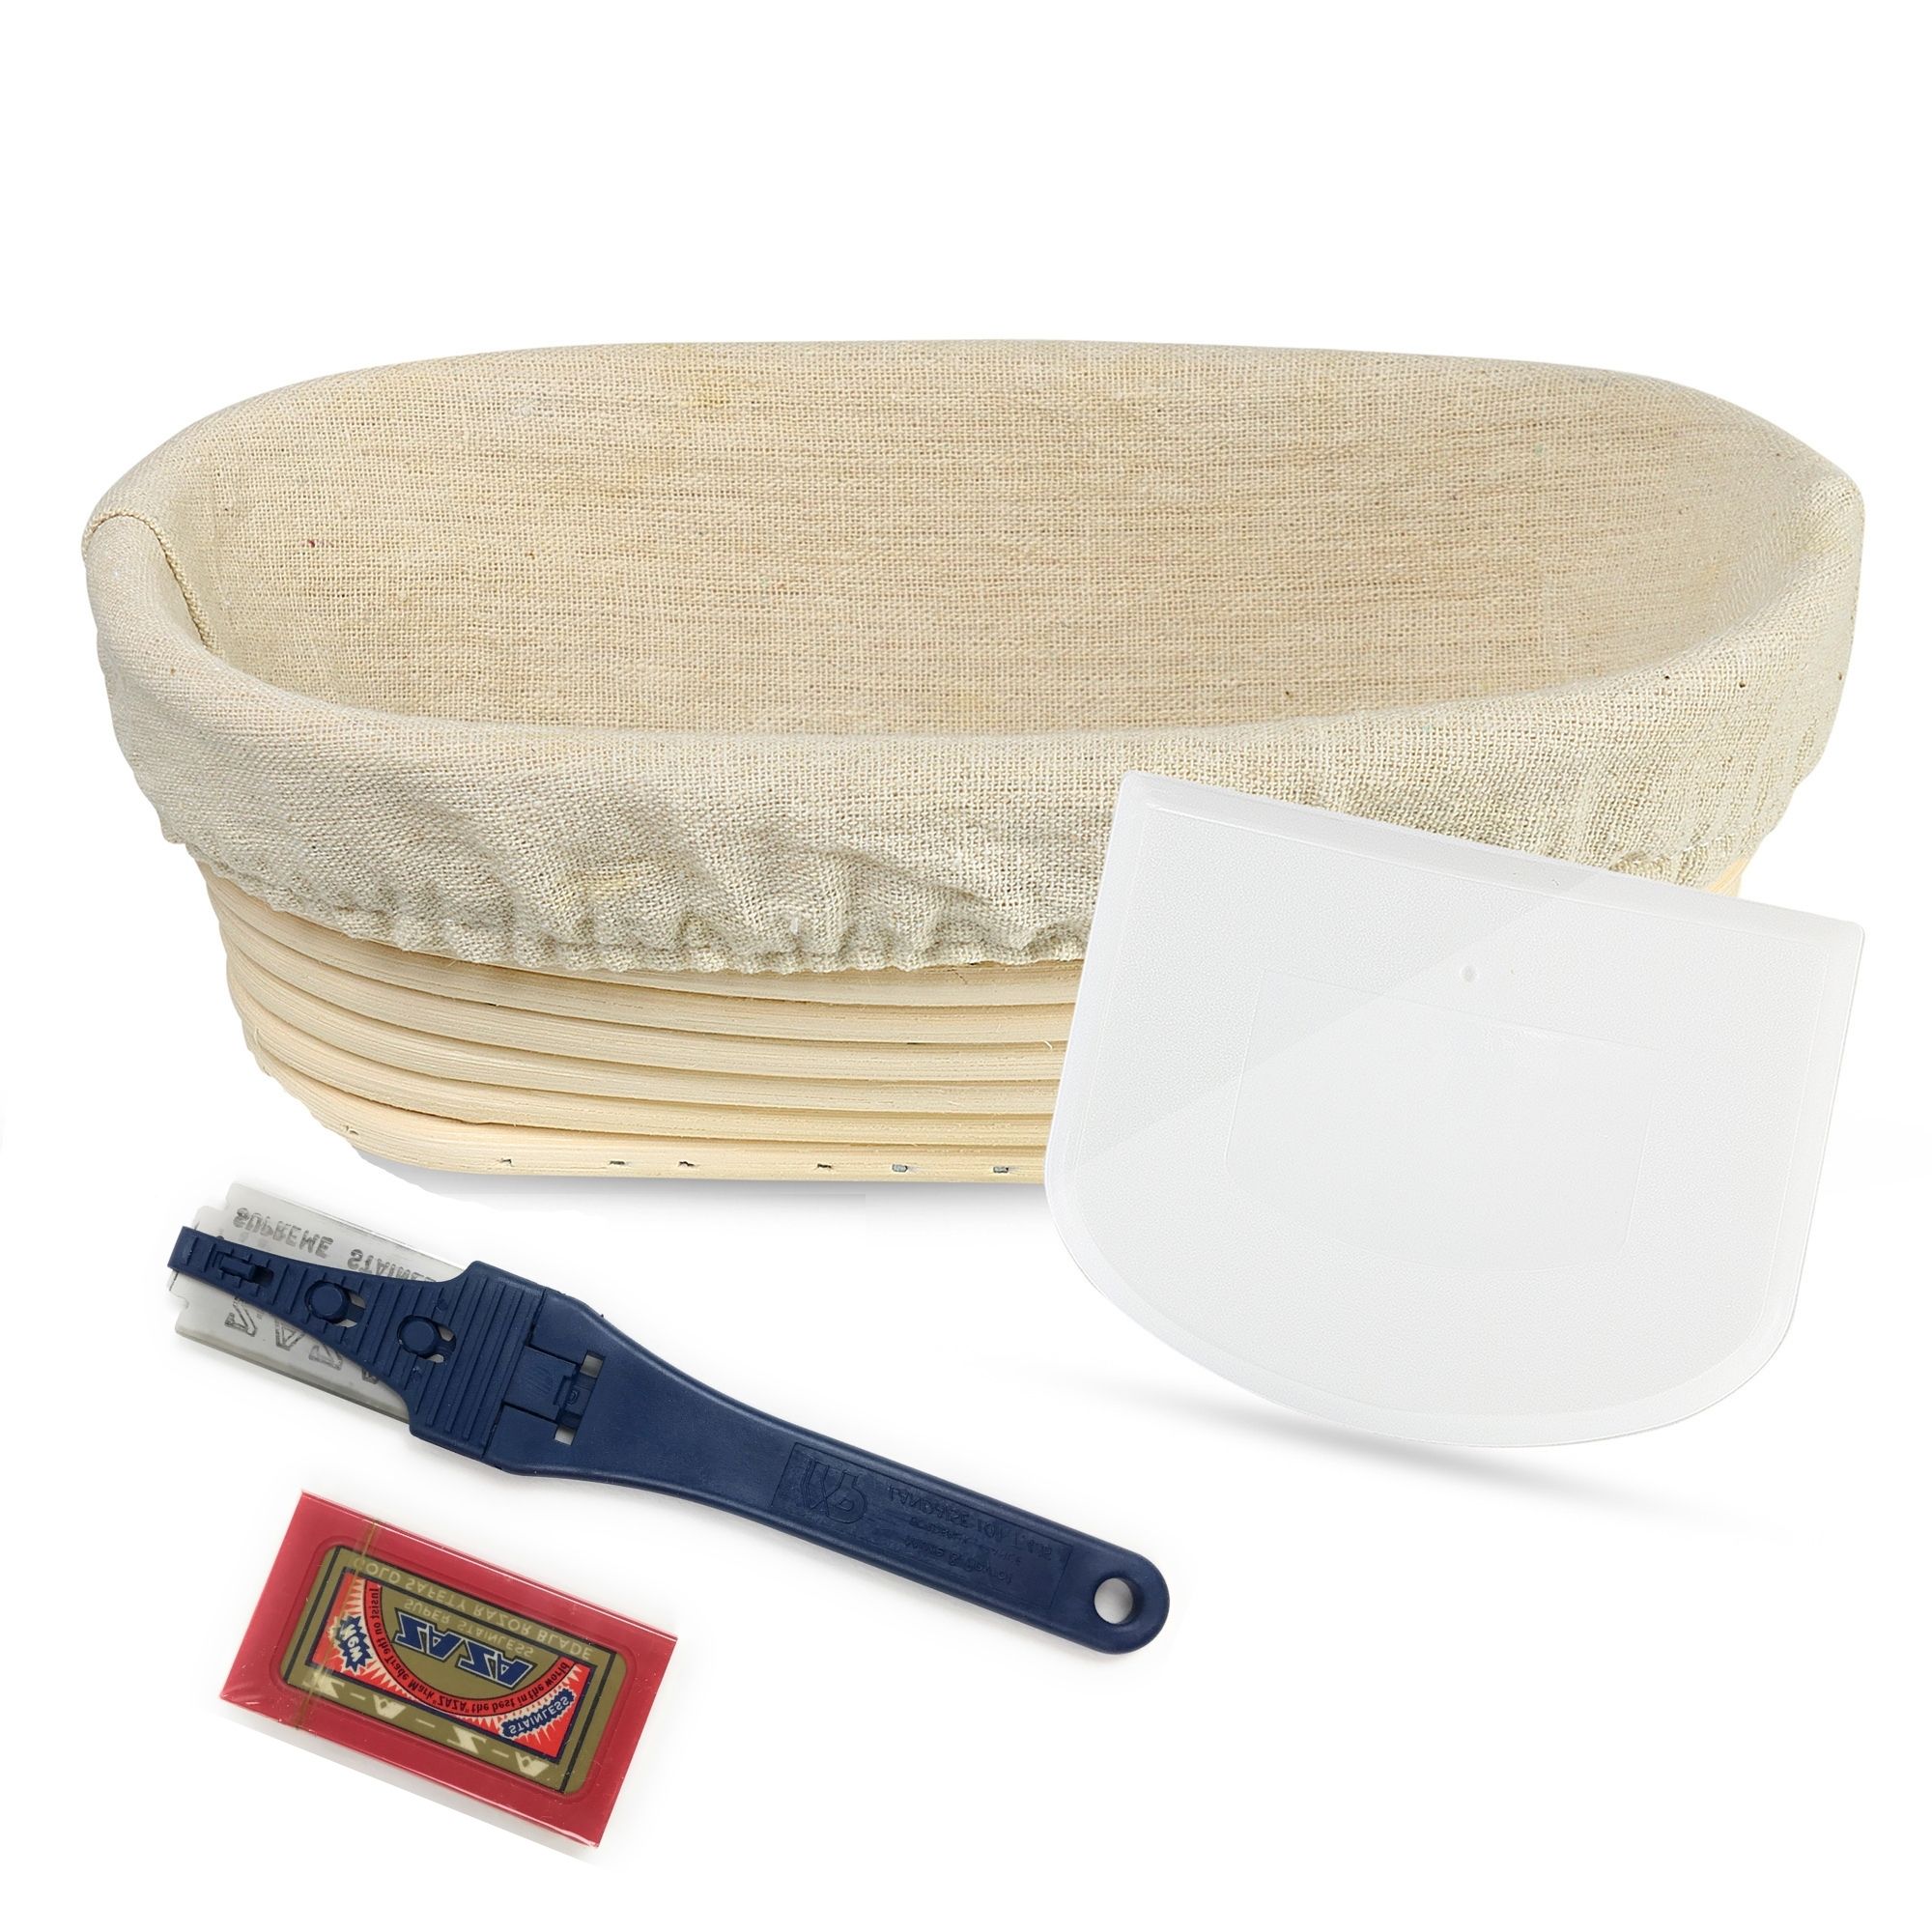 Teigschaber und Leinenbezug ideal für Heim- und professionelle Bäcker inklusive 100/% natürlichem Rattan Walfos Gärkörbchen rundes Banneton Proofing Basket Set 22cm